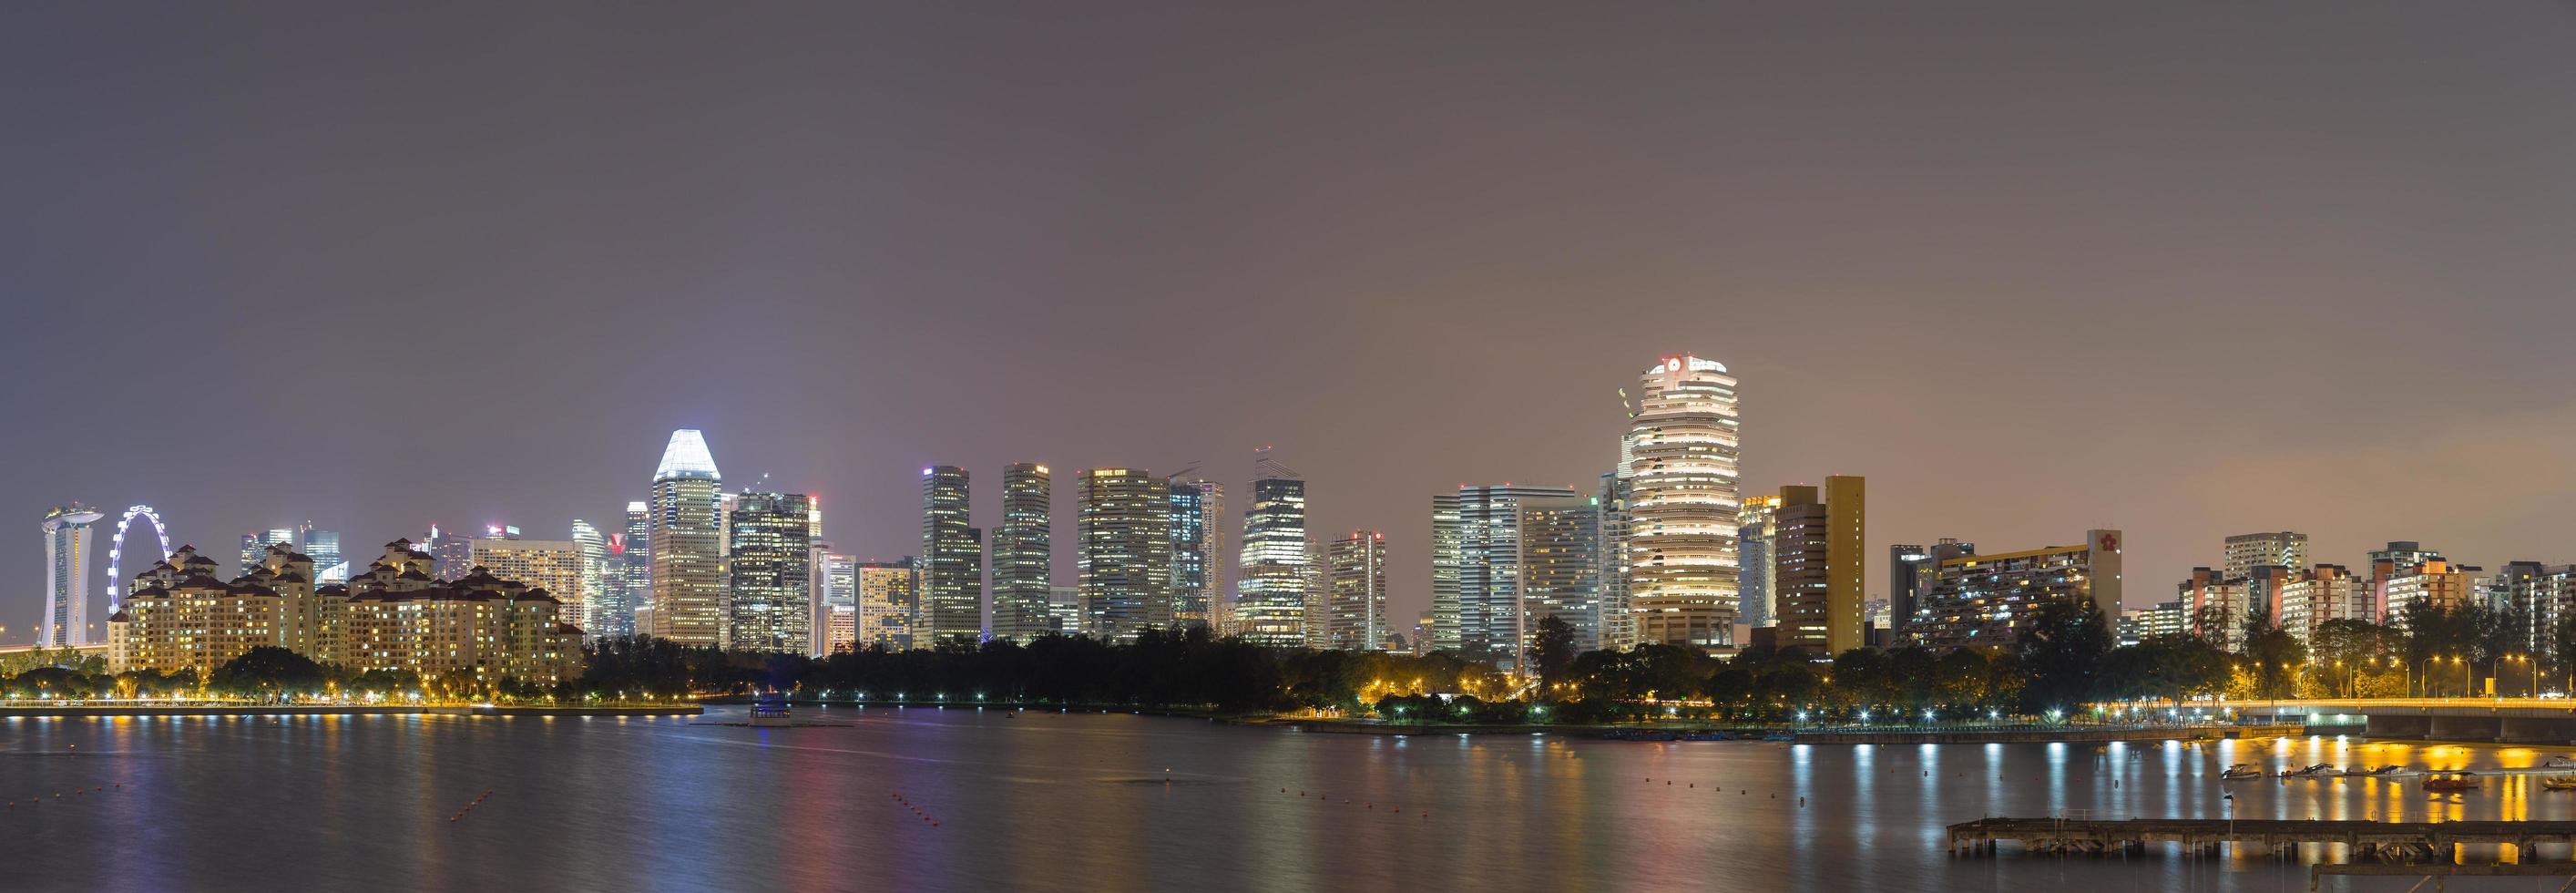 horizonte de cingapura foto